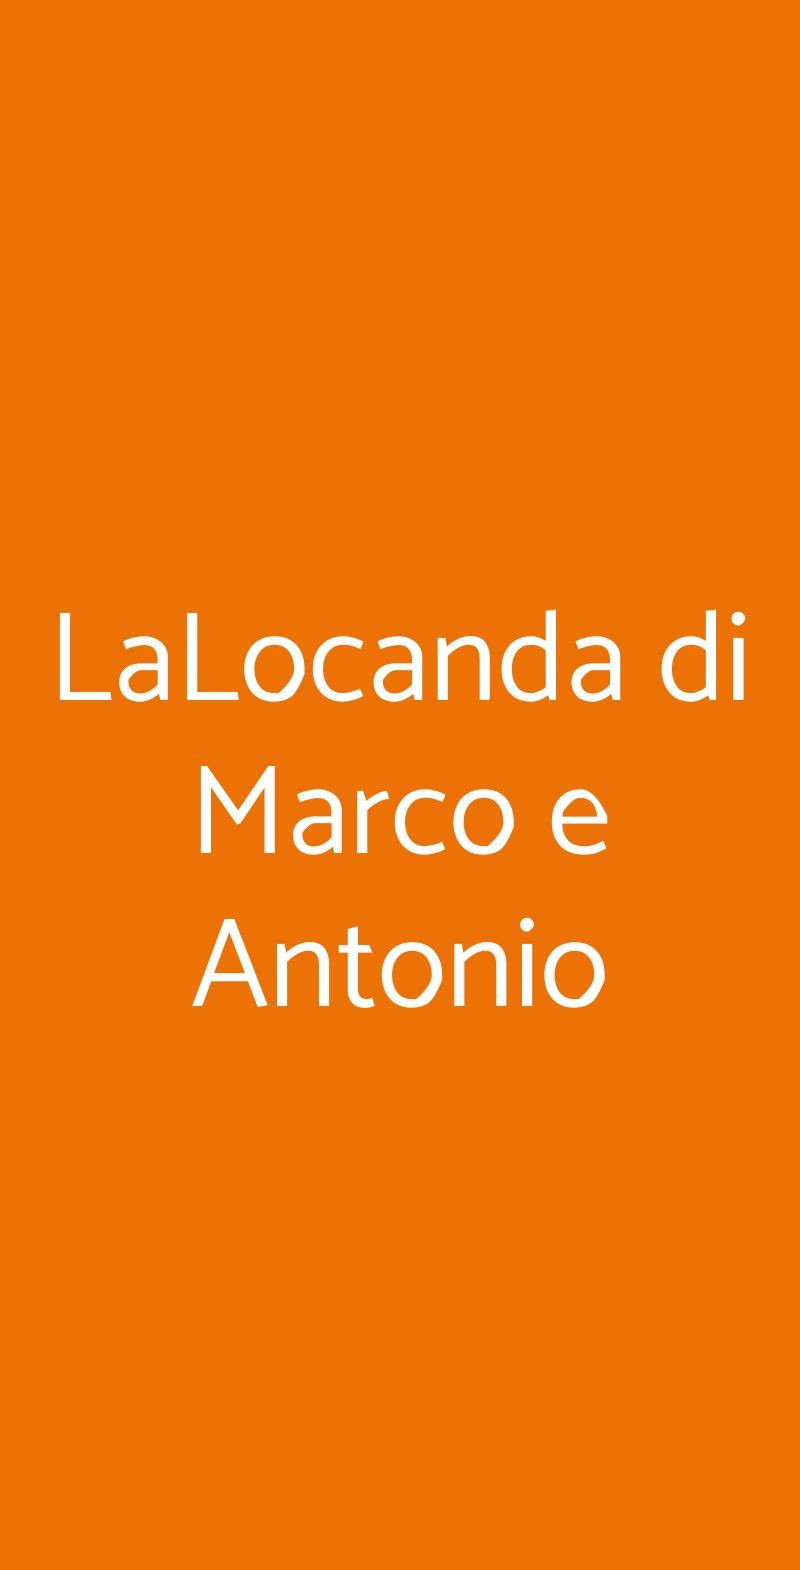 LaLocanda di Marco e Antonio Portici menù 1 pagina